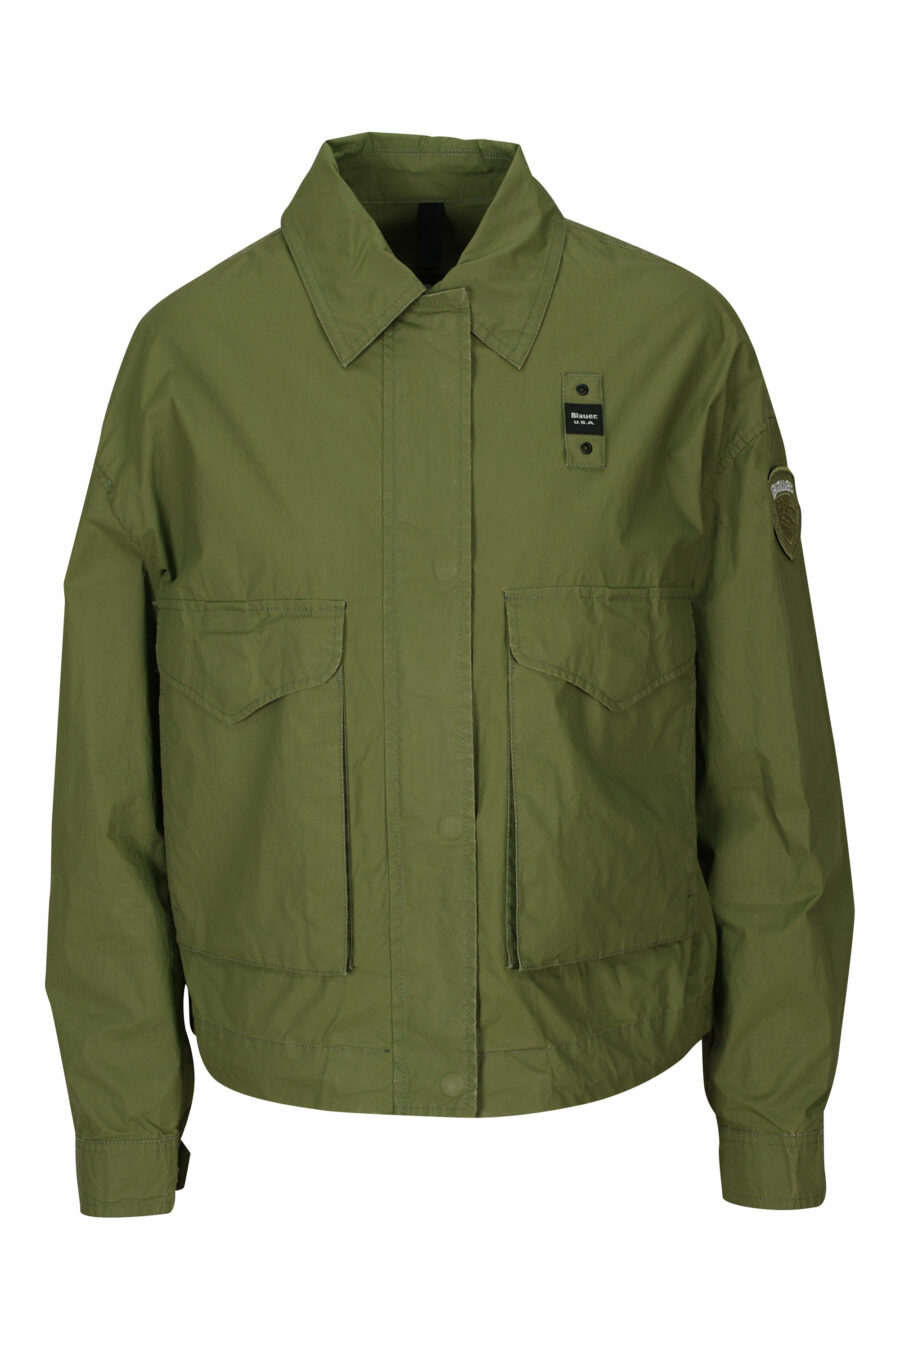 Chaqueta verde militar con bolsillos frontales y logo parche lateral - 8058610712600